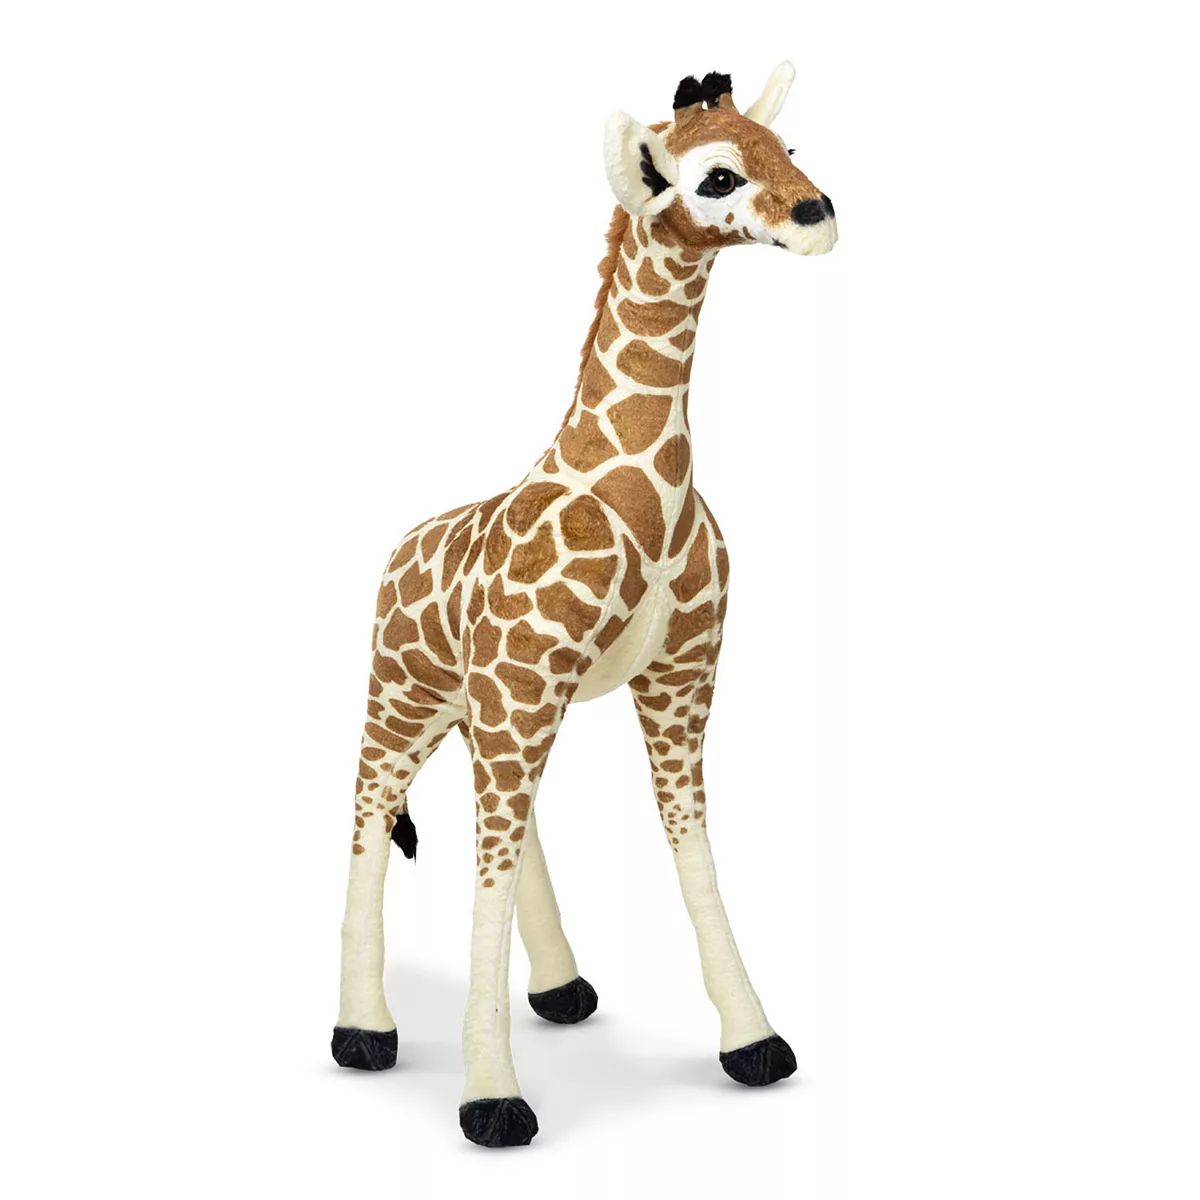 Melissa & Doug Lifelike 3-Foot Plush Standing Baby Giraffe Stuffed Animal | Kohl's